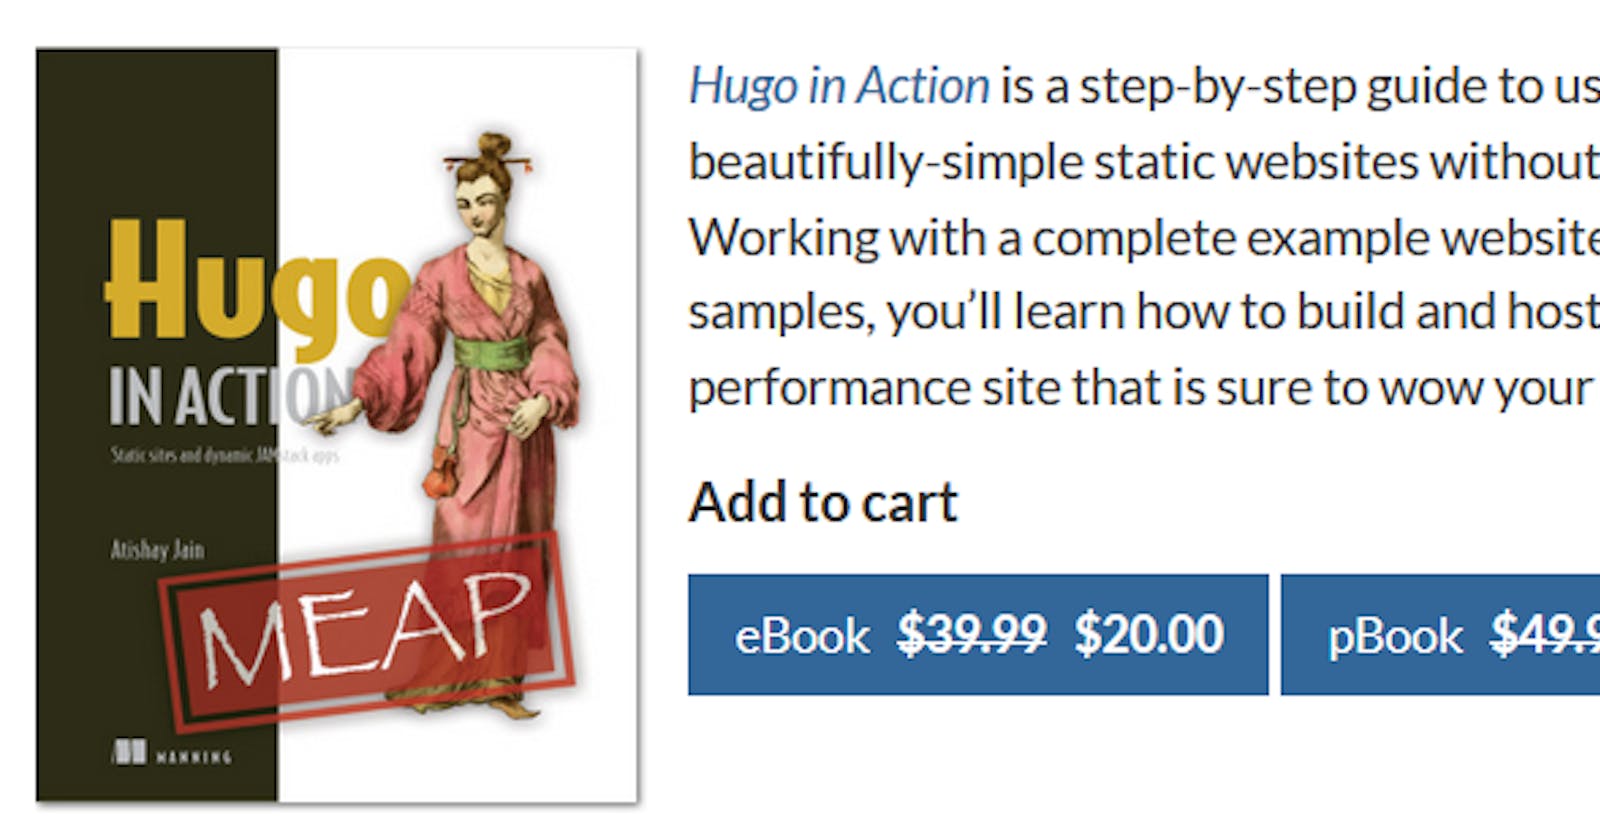 Hugo In Action - Manning Flash Sale